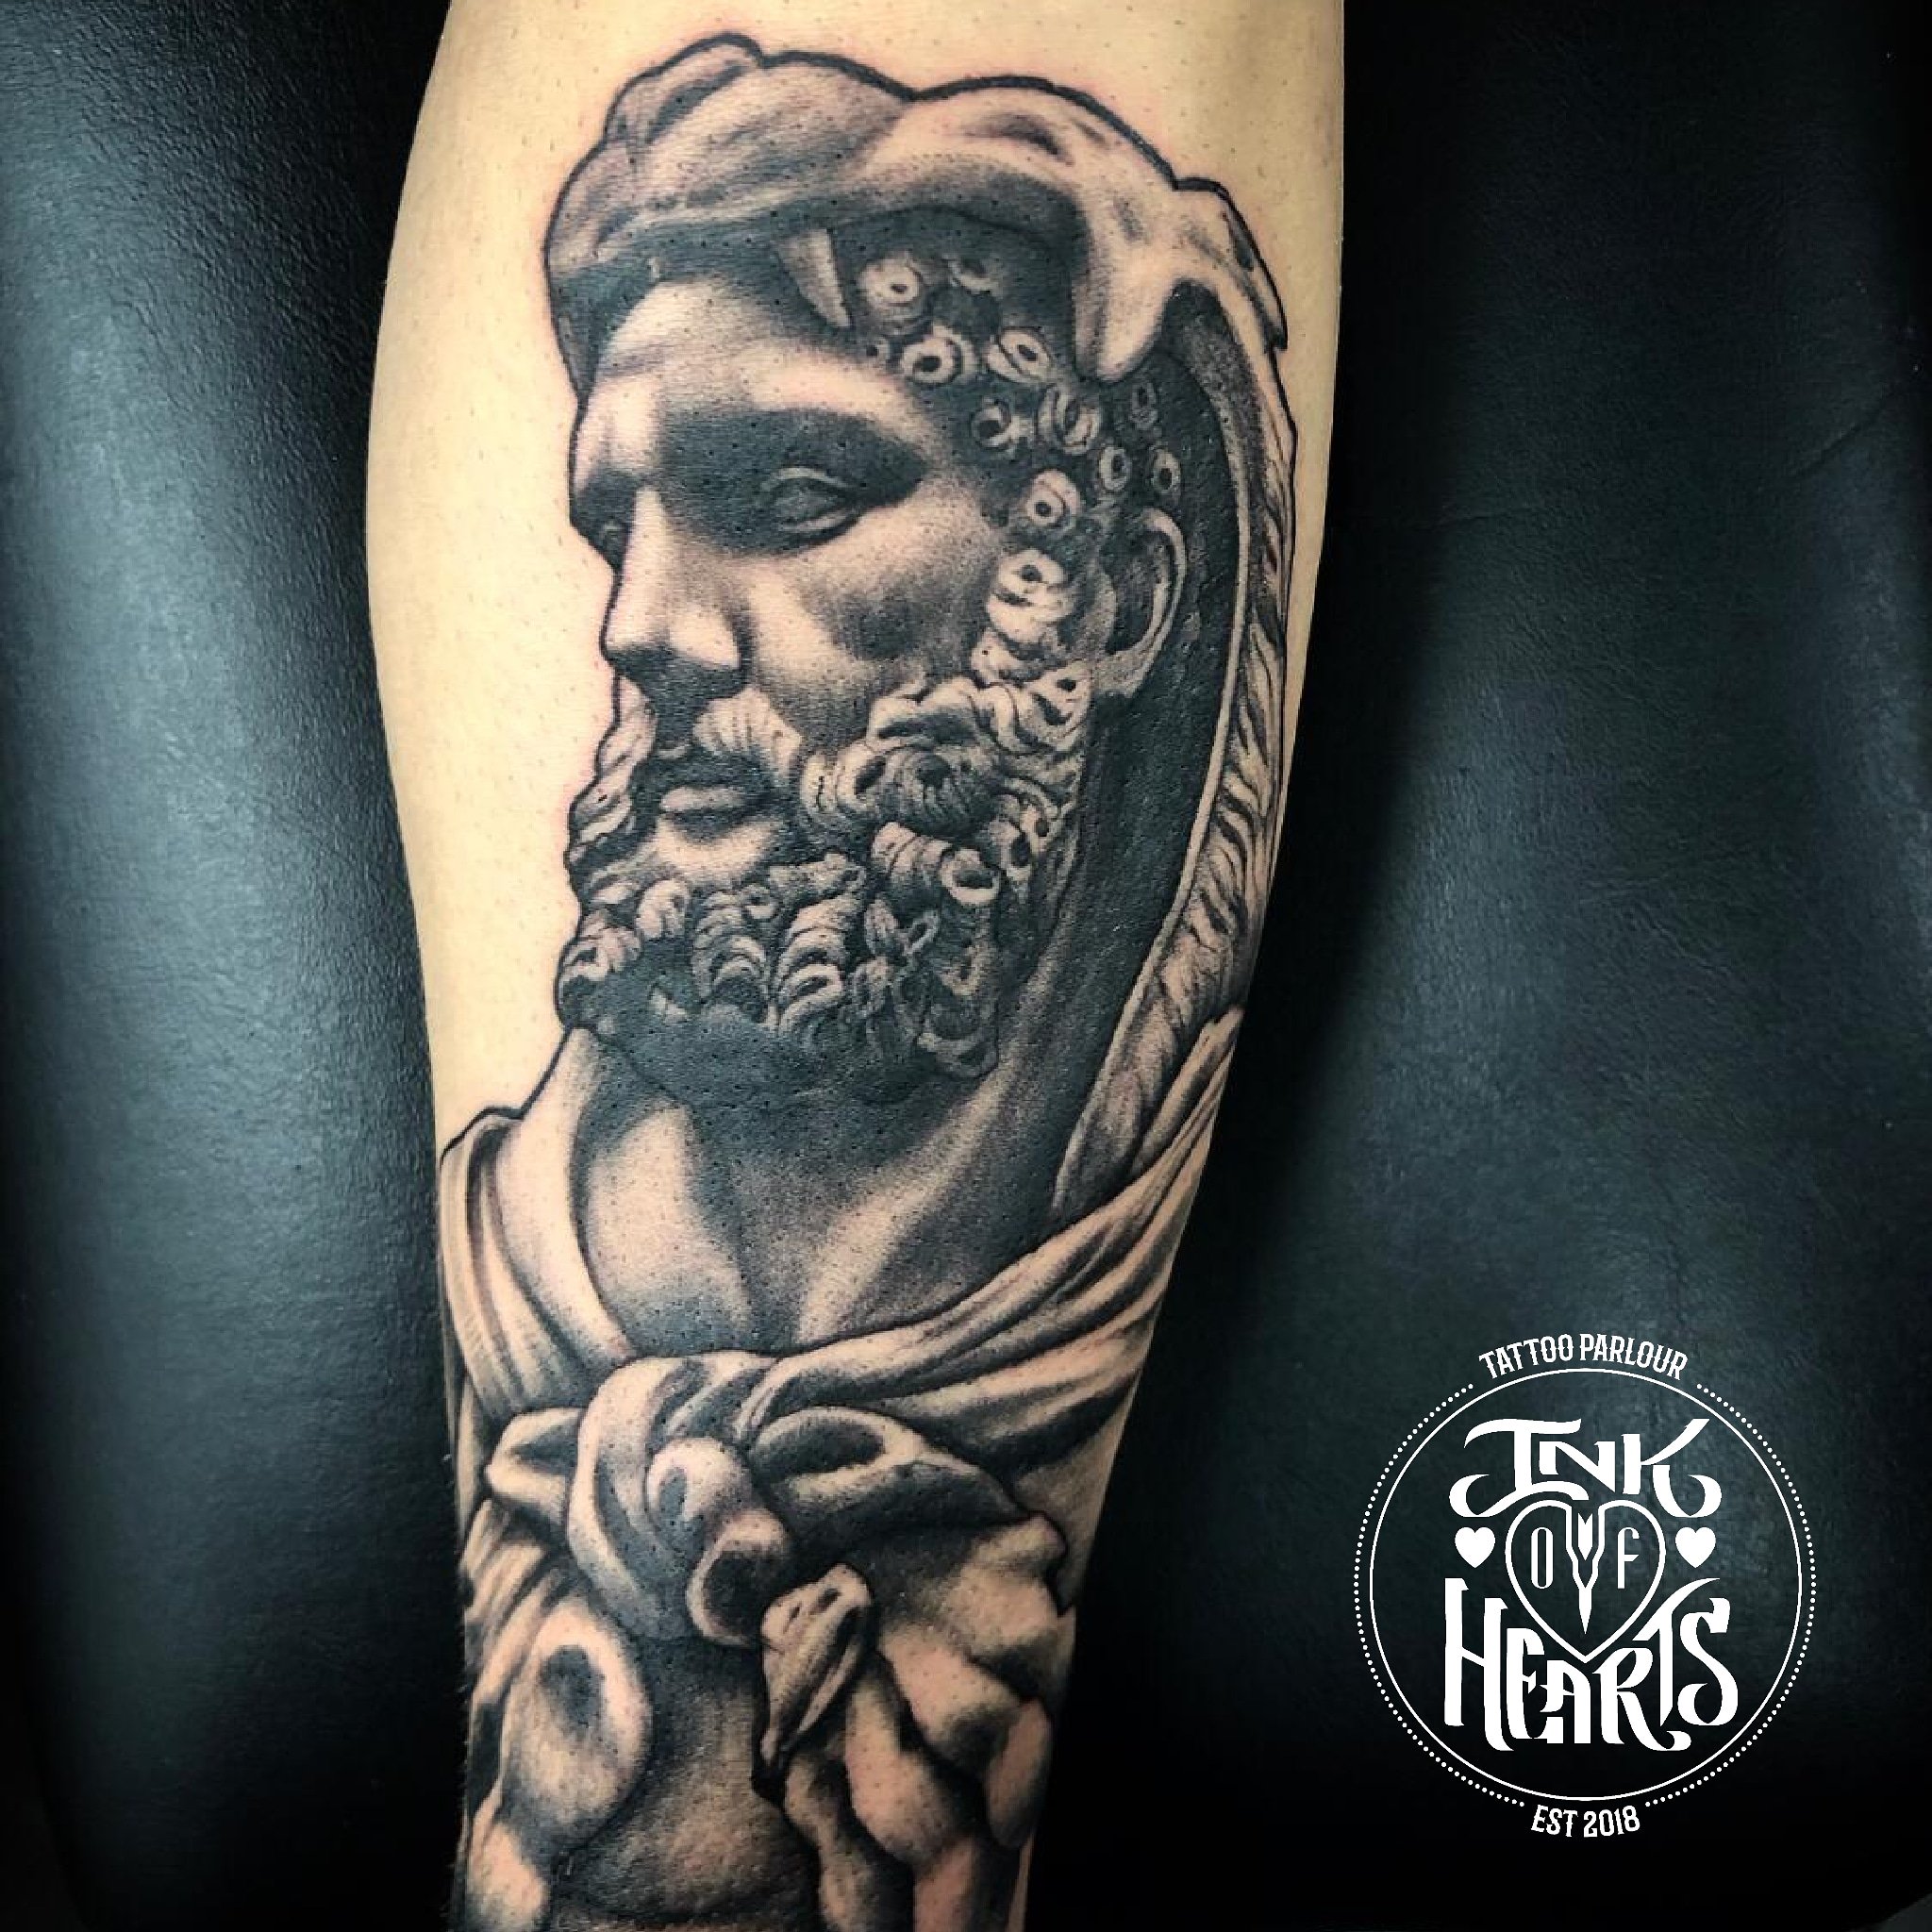 Lexica  Armor of God tattoo